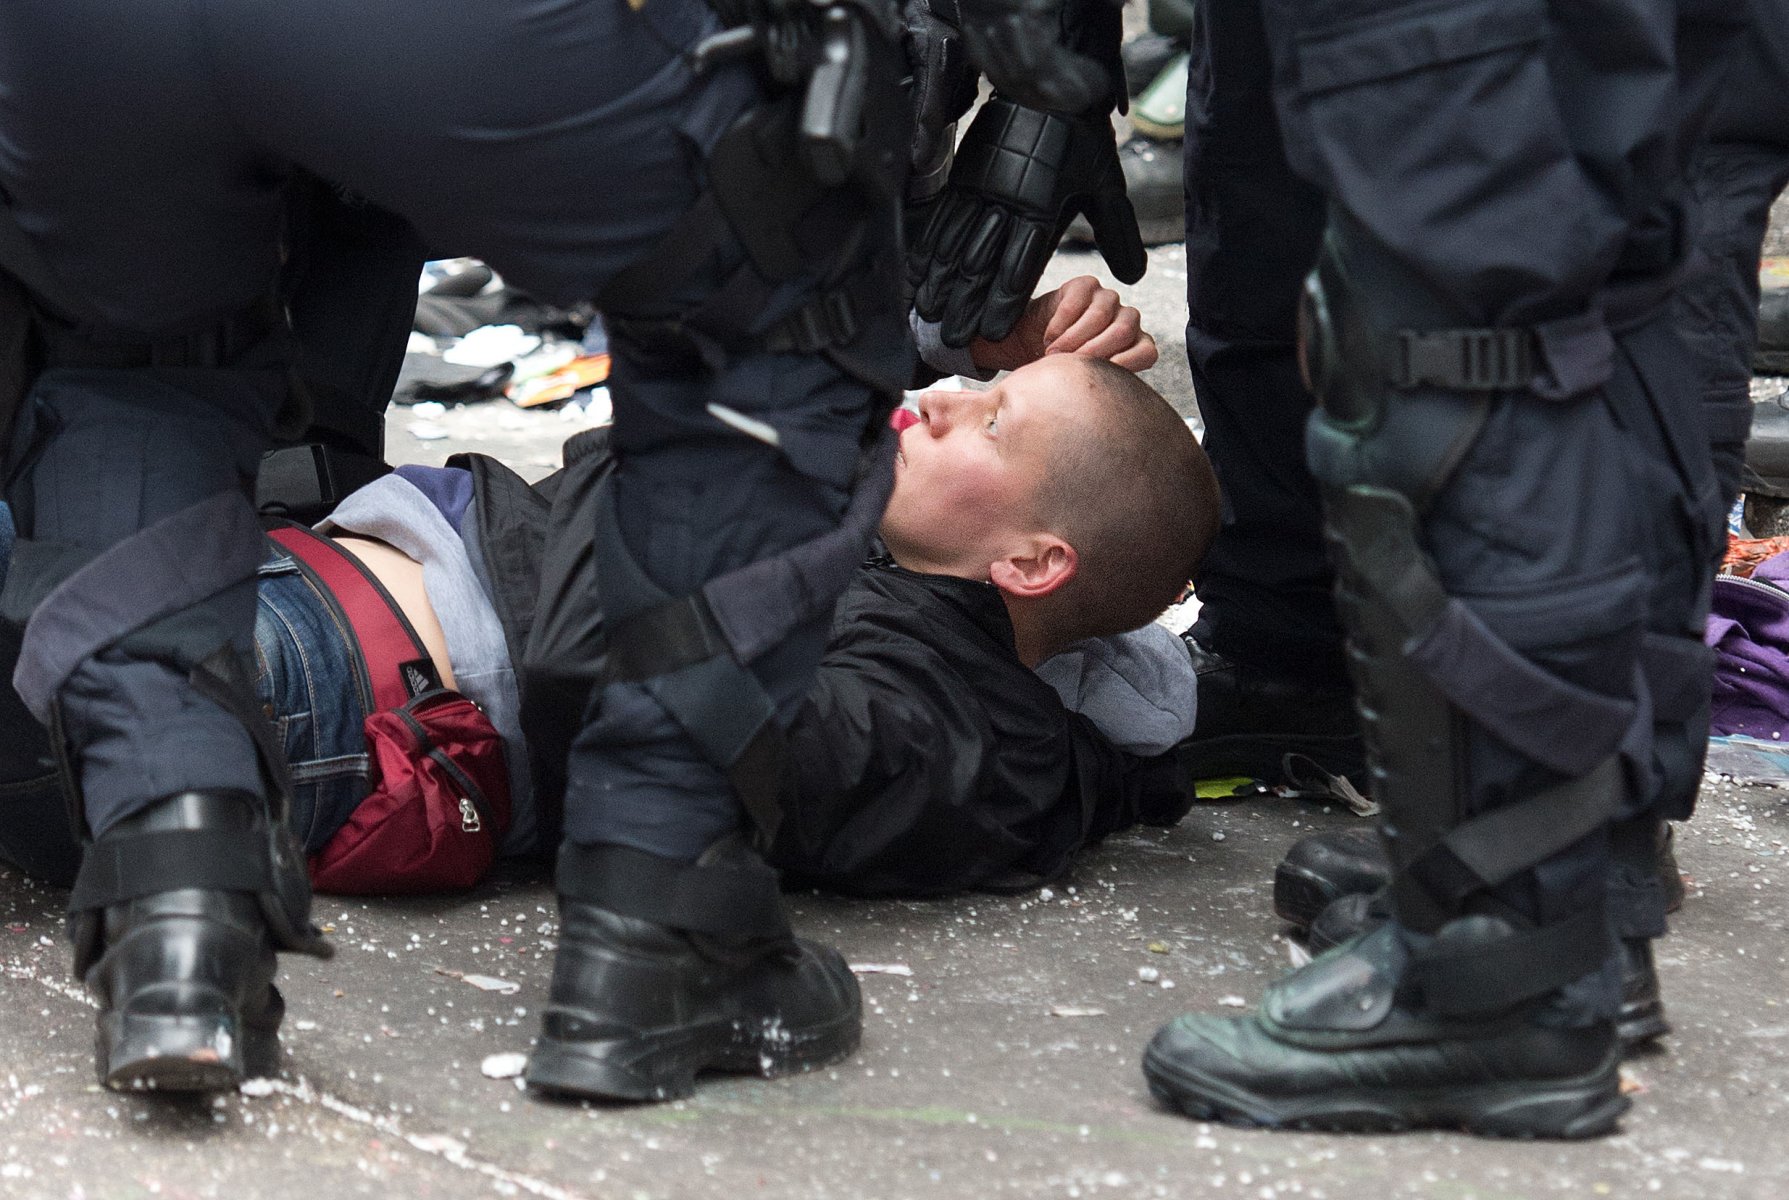 Um eine kollabierte Demonstrantin der Blockupy-Bewegung kümmern sich Polizisten am 01.06.2013 in der Innenstadt von Frankfurt am Main (Hessen) nach der gewaltsamen Auflösung eines Polizeikessels. Die Polizei ist mit einem massiven Kräfteaufgebot vor Ort. Foto: Boris Roessler/dpa